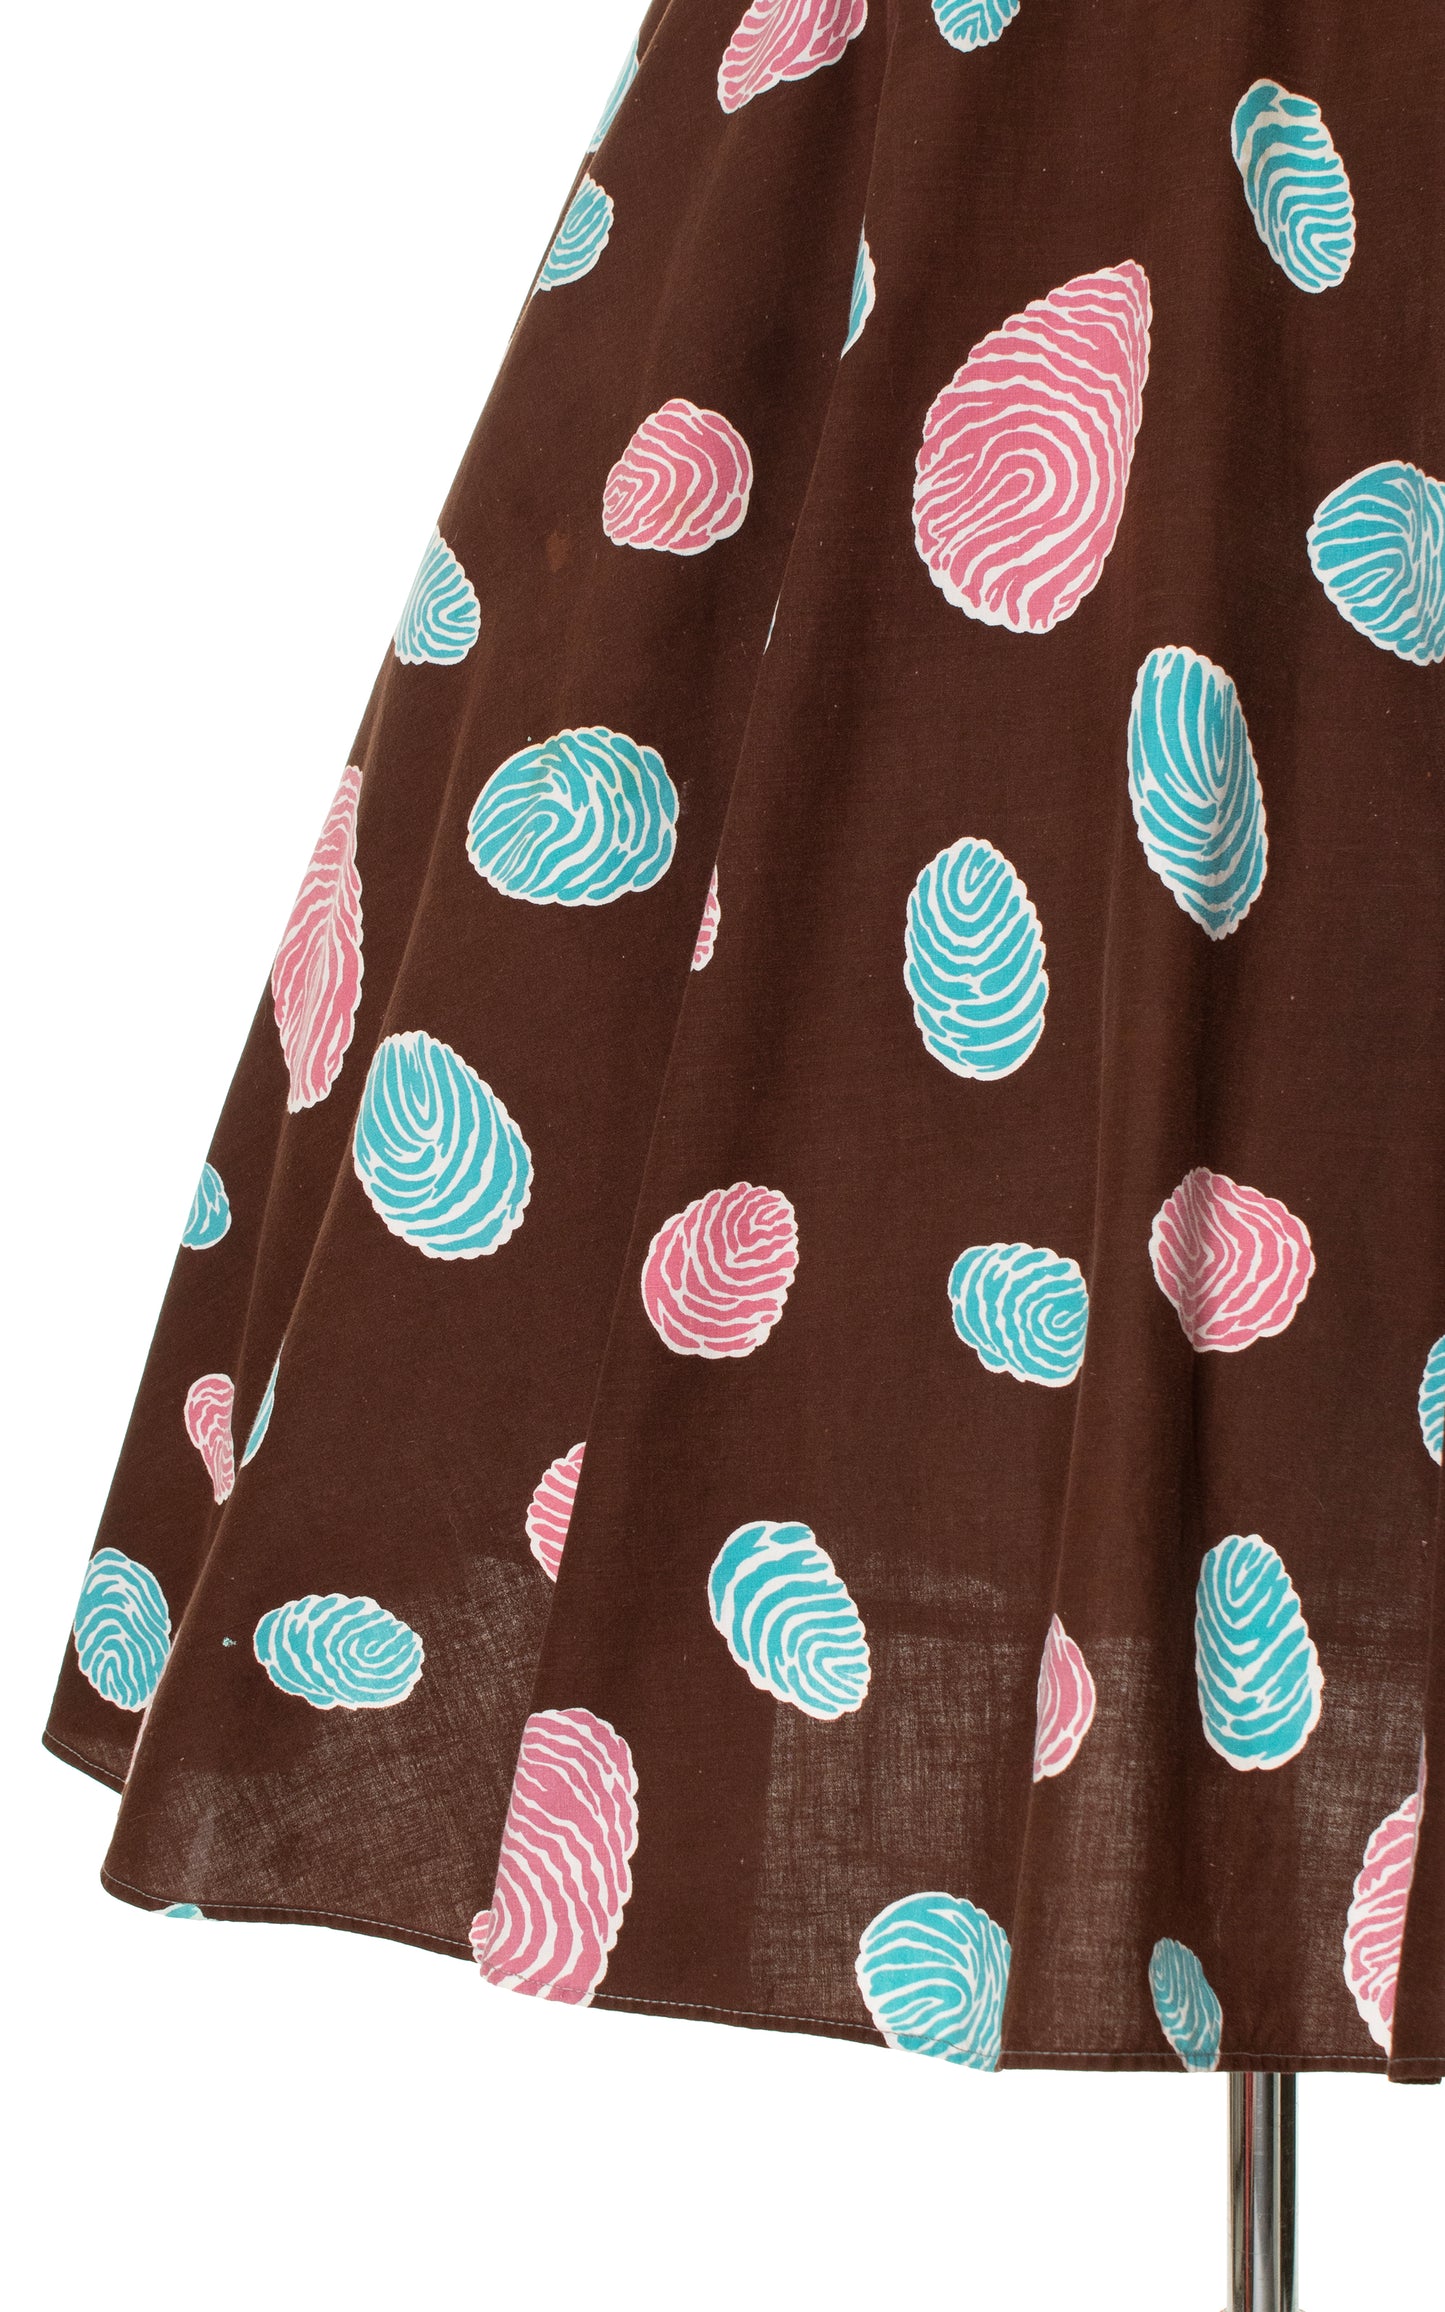 1940s 1950s Fingerprint or Raison Novelty Print Skirt | large